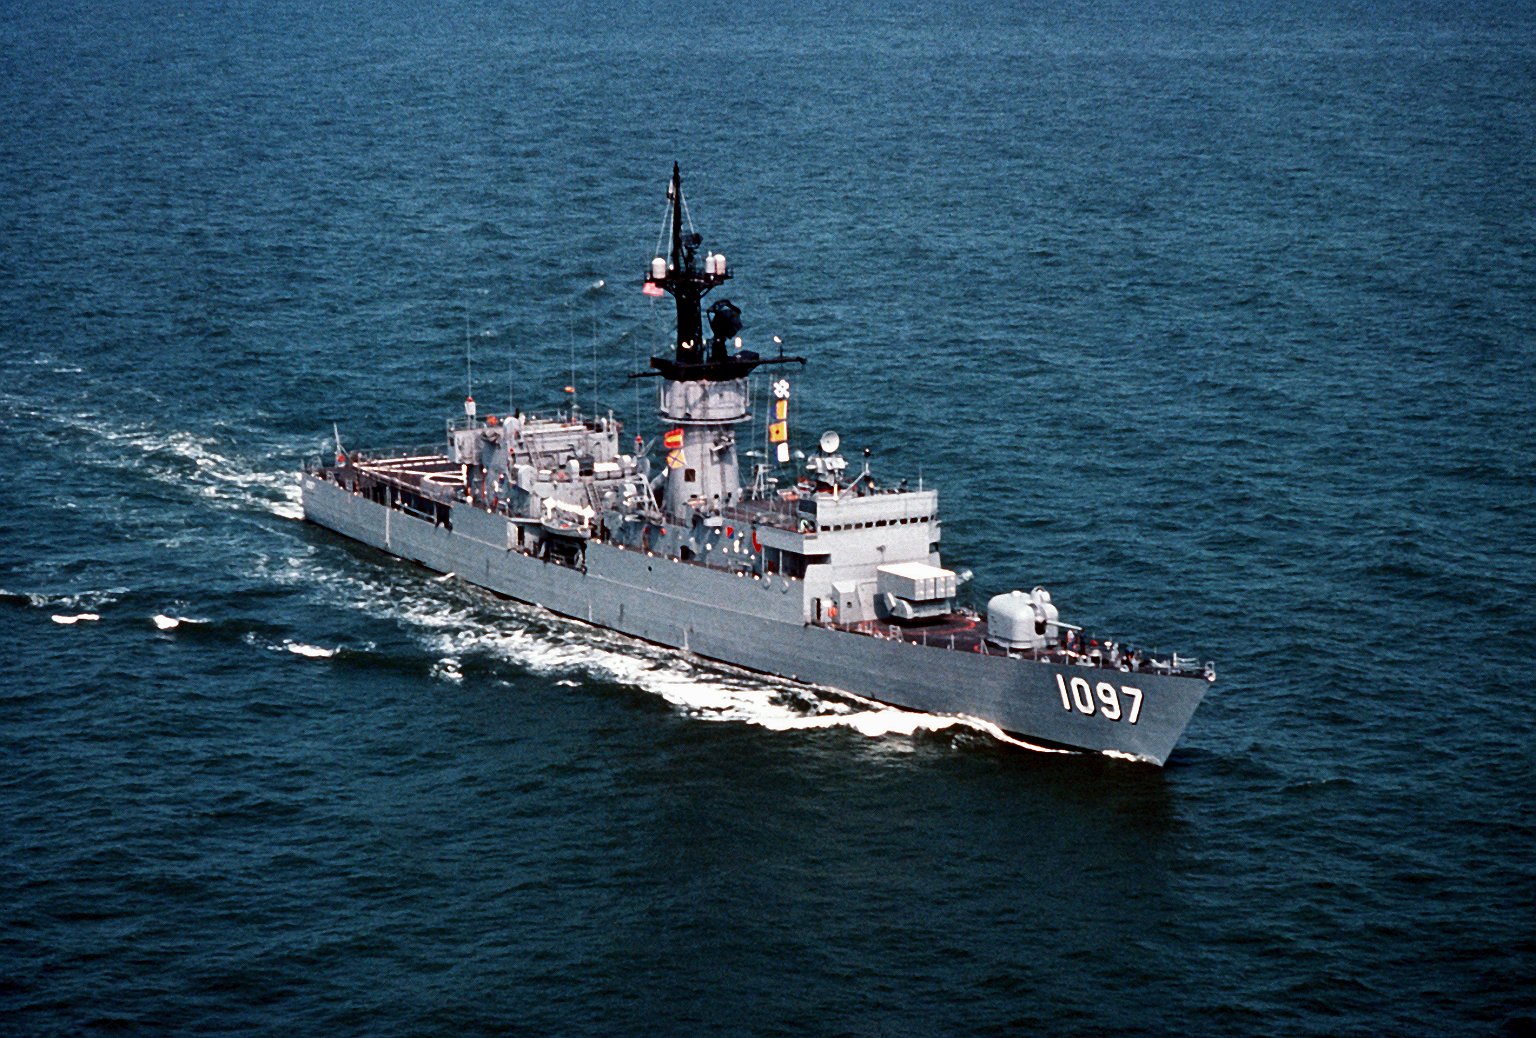 USS Moniester